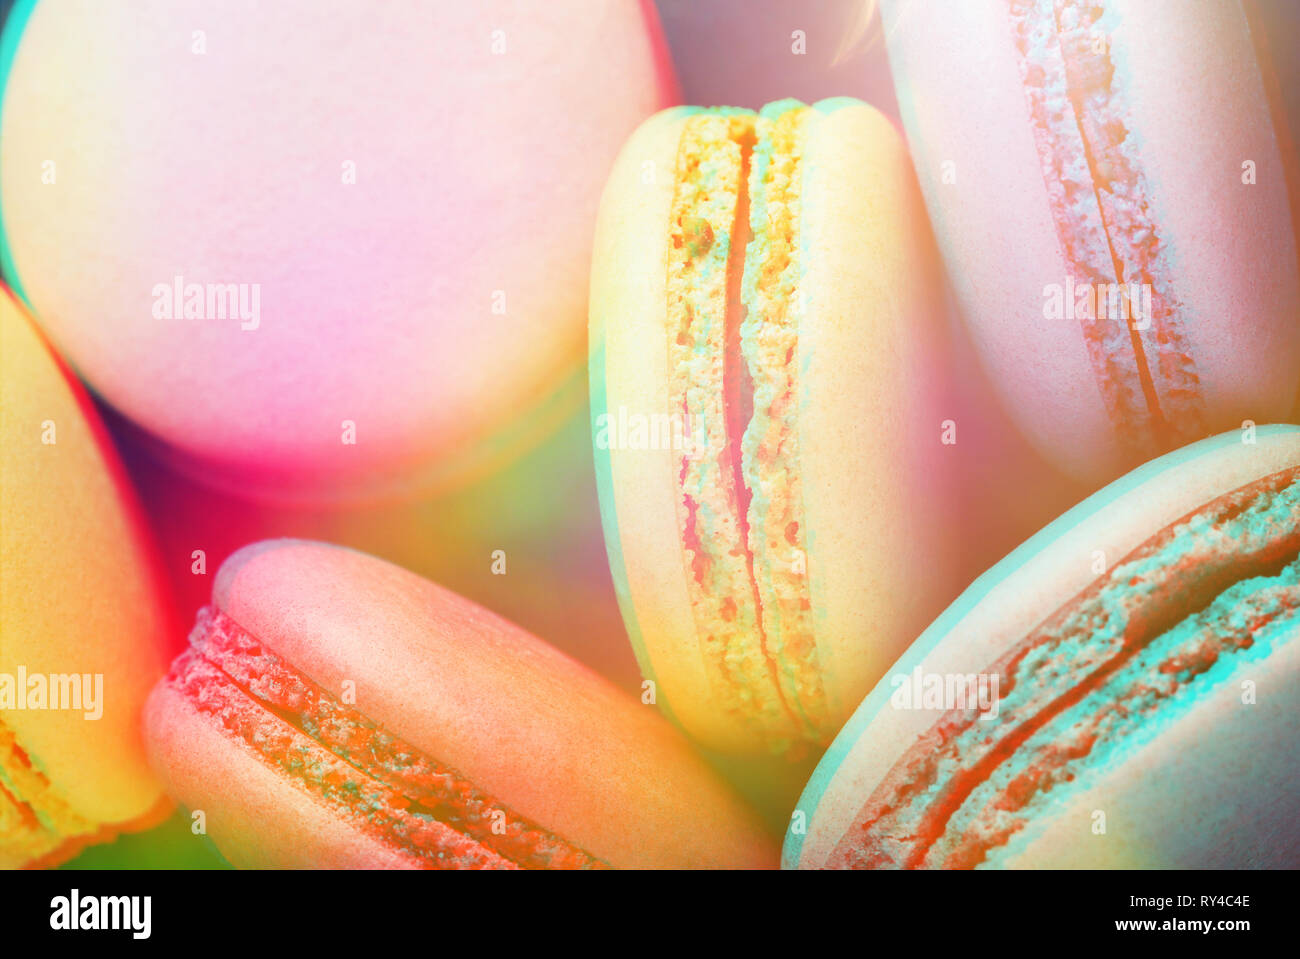 Bunte macarons auf dunkelblauem Hintergrund. Ansicht von oben, Nahaufnahme, getönt mit trendigen 3D-Effekt. Stockfoto